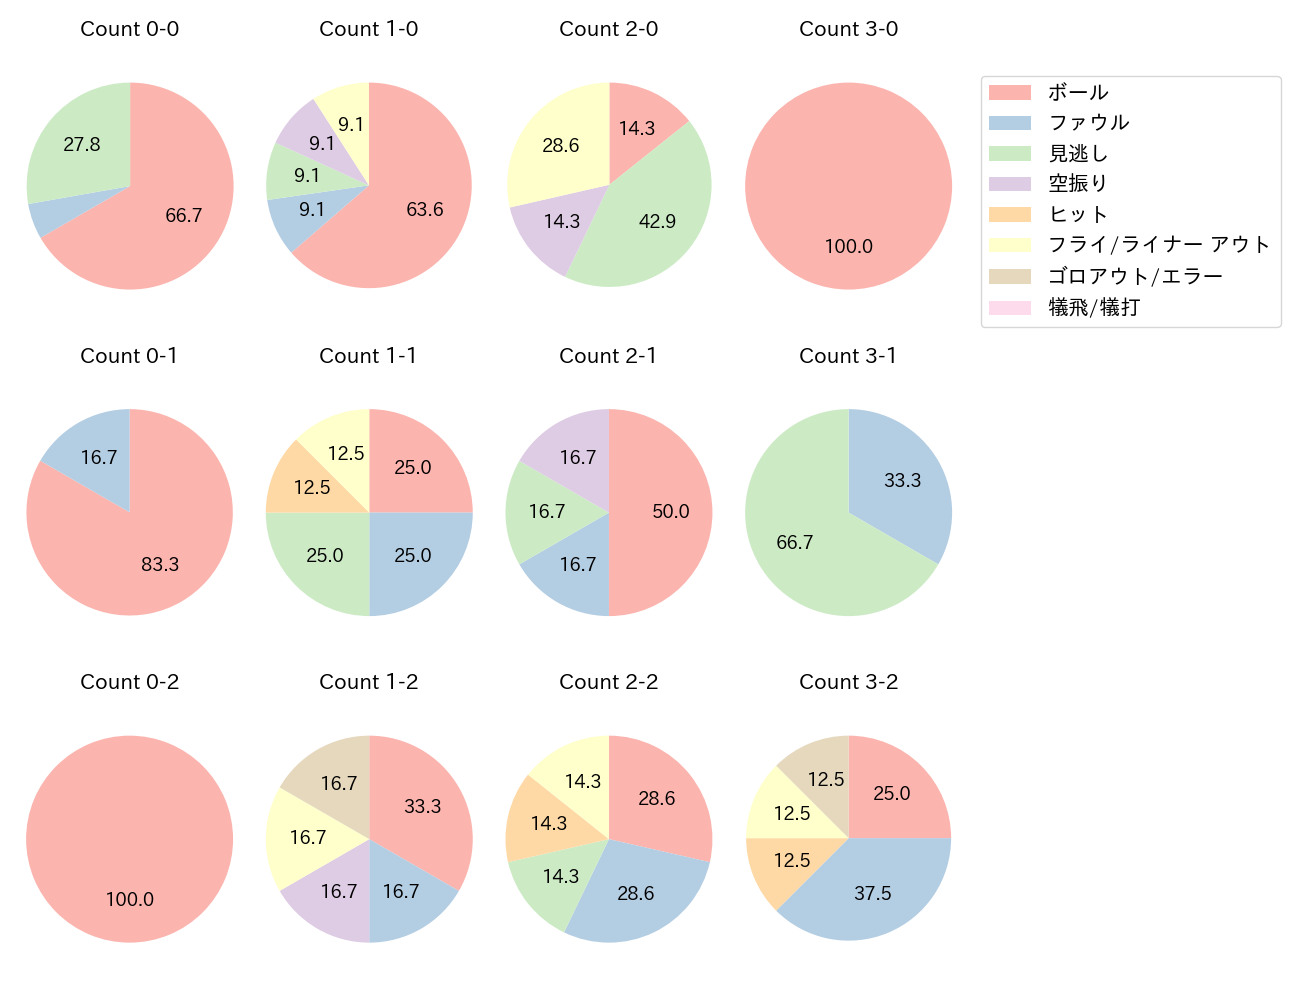 鈴木 誠也の球数分布(2021年3月)